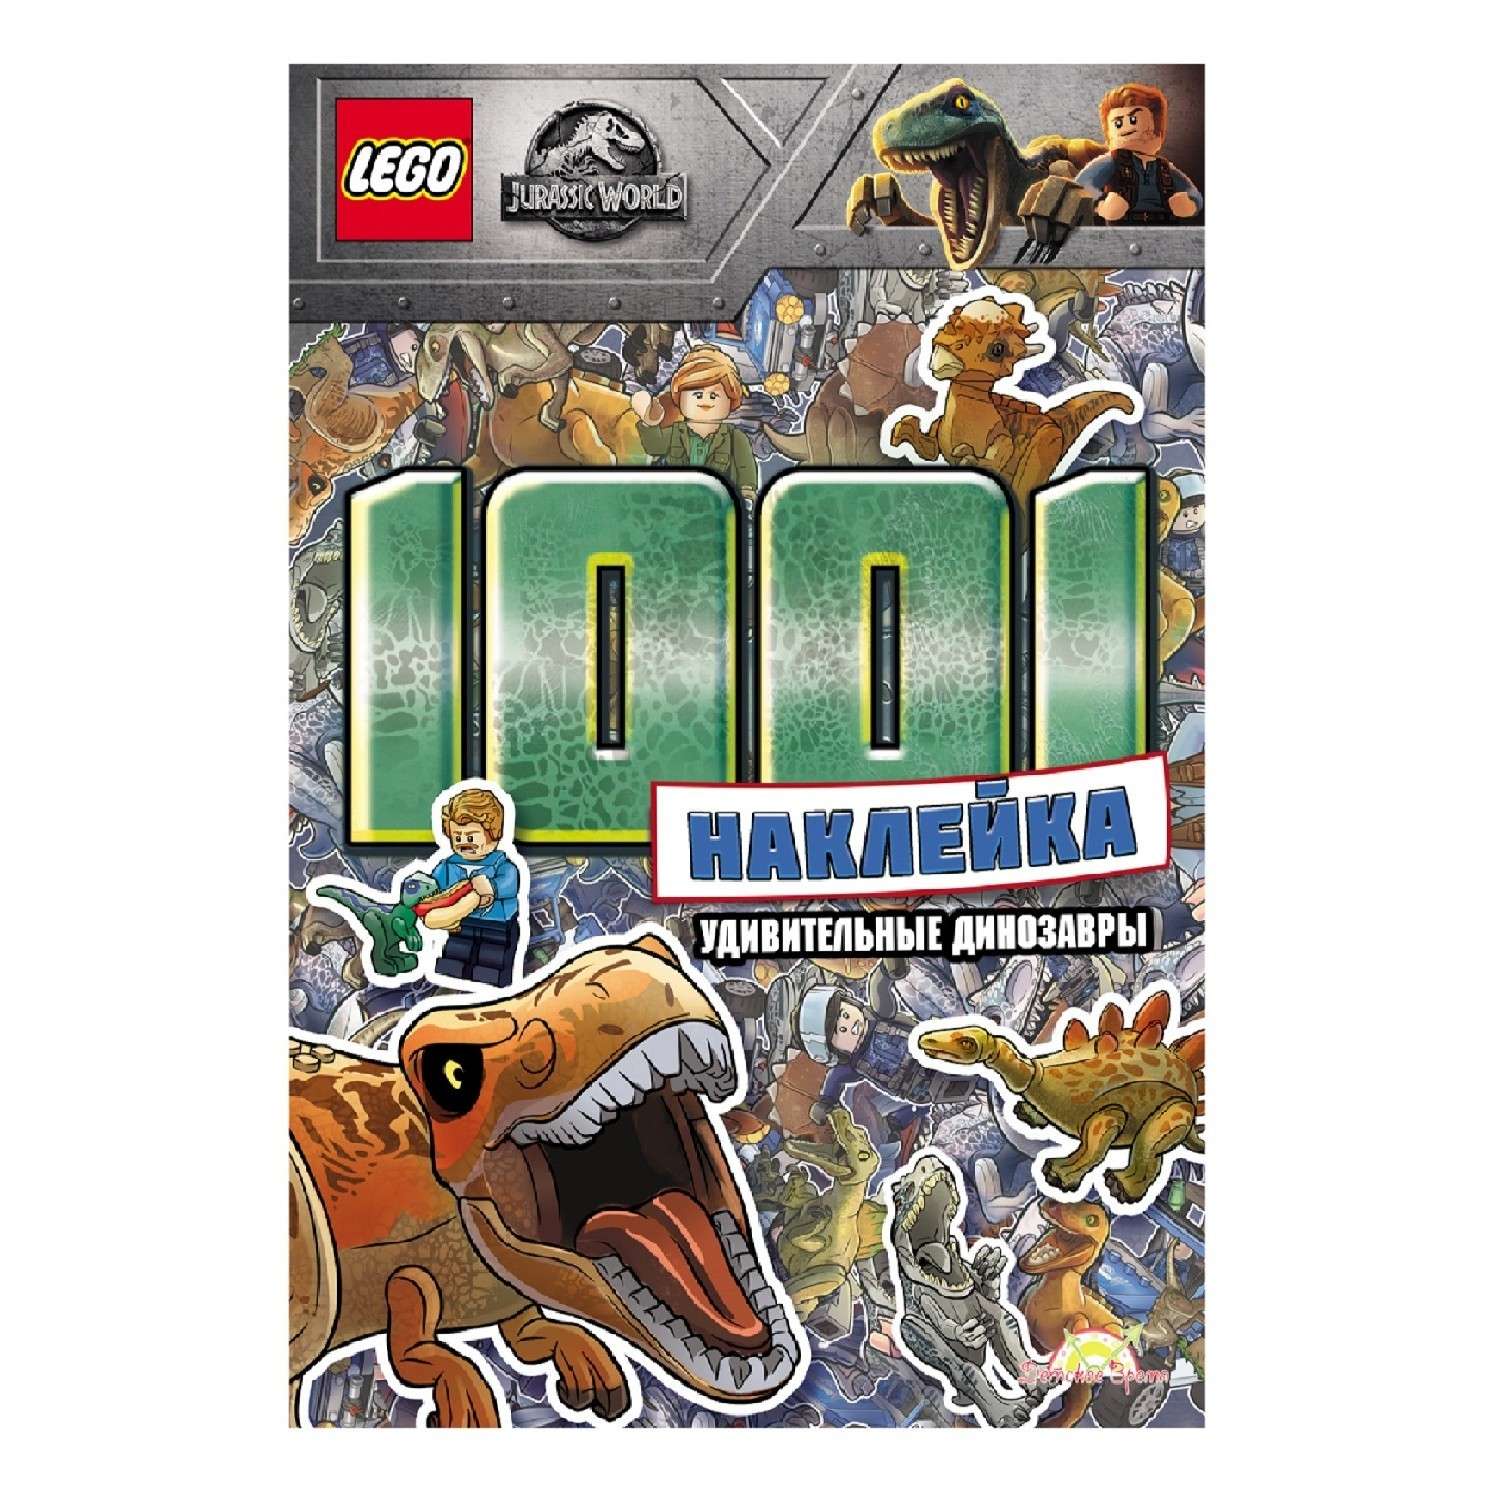 Книга с наклейками LEGO jurassic world 1001 наклейка удивительные динозавры LTS-6201 - фото 1